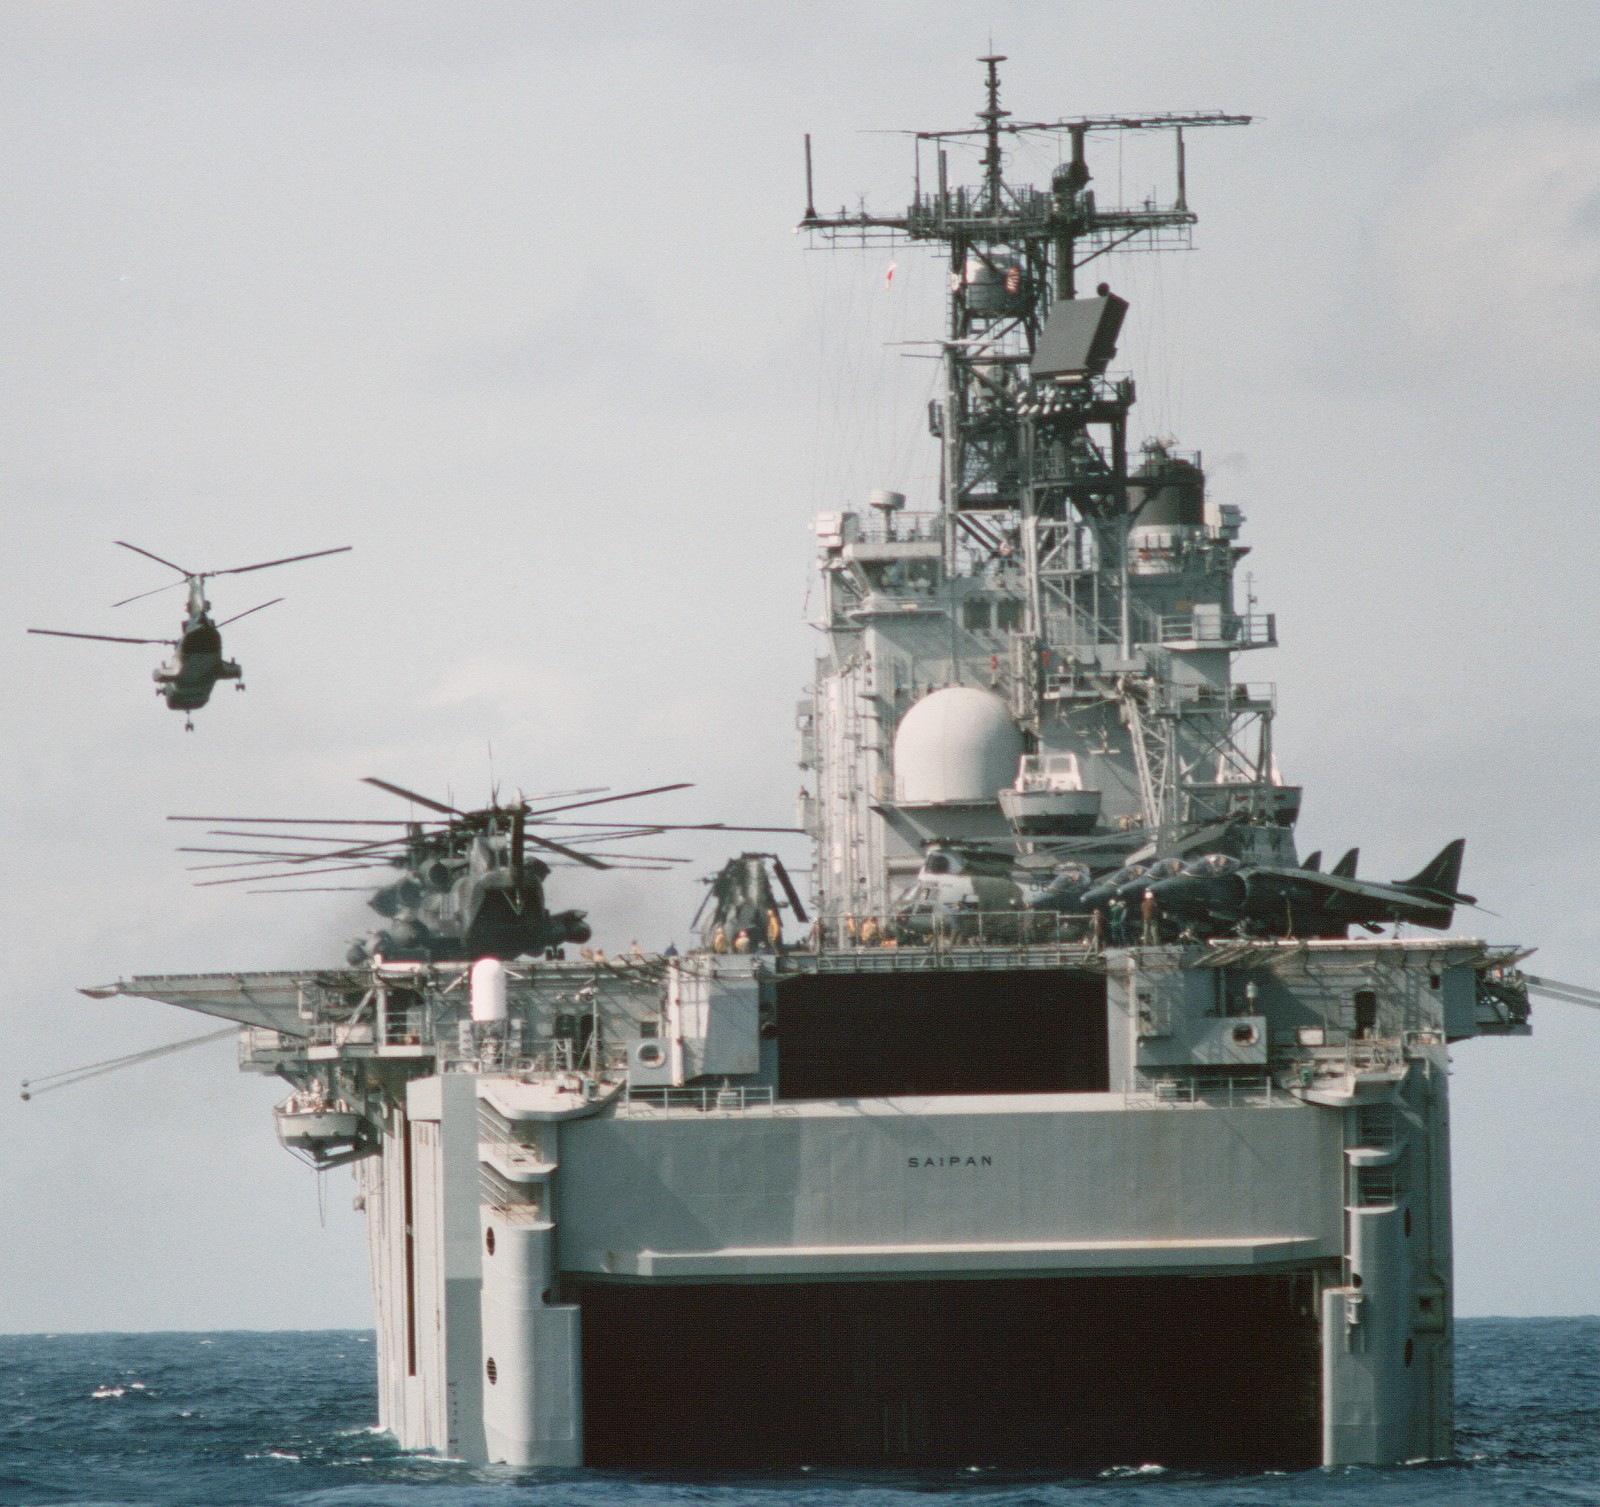 lha-2 uss saipan tarawa class amphibious assault ship us navy 22nd meu hmm-261 usmc operation sharp edge liberia 83